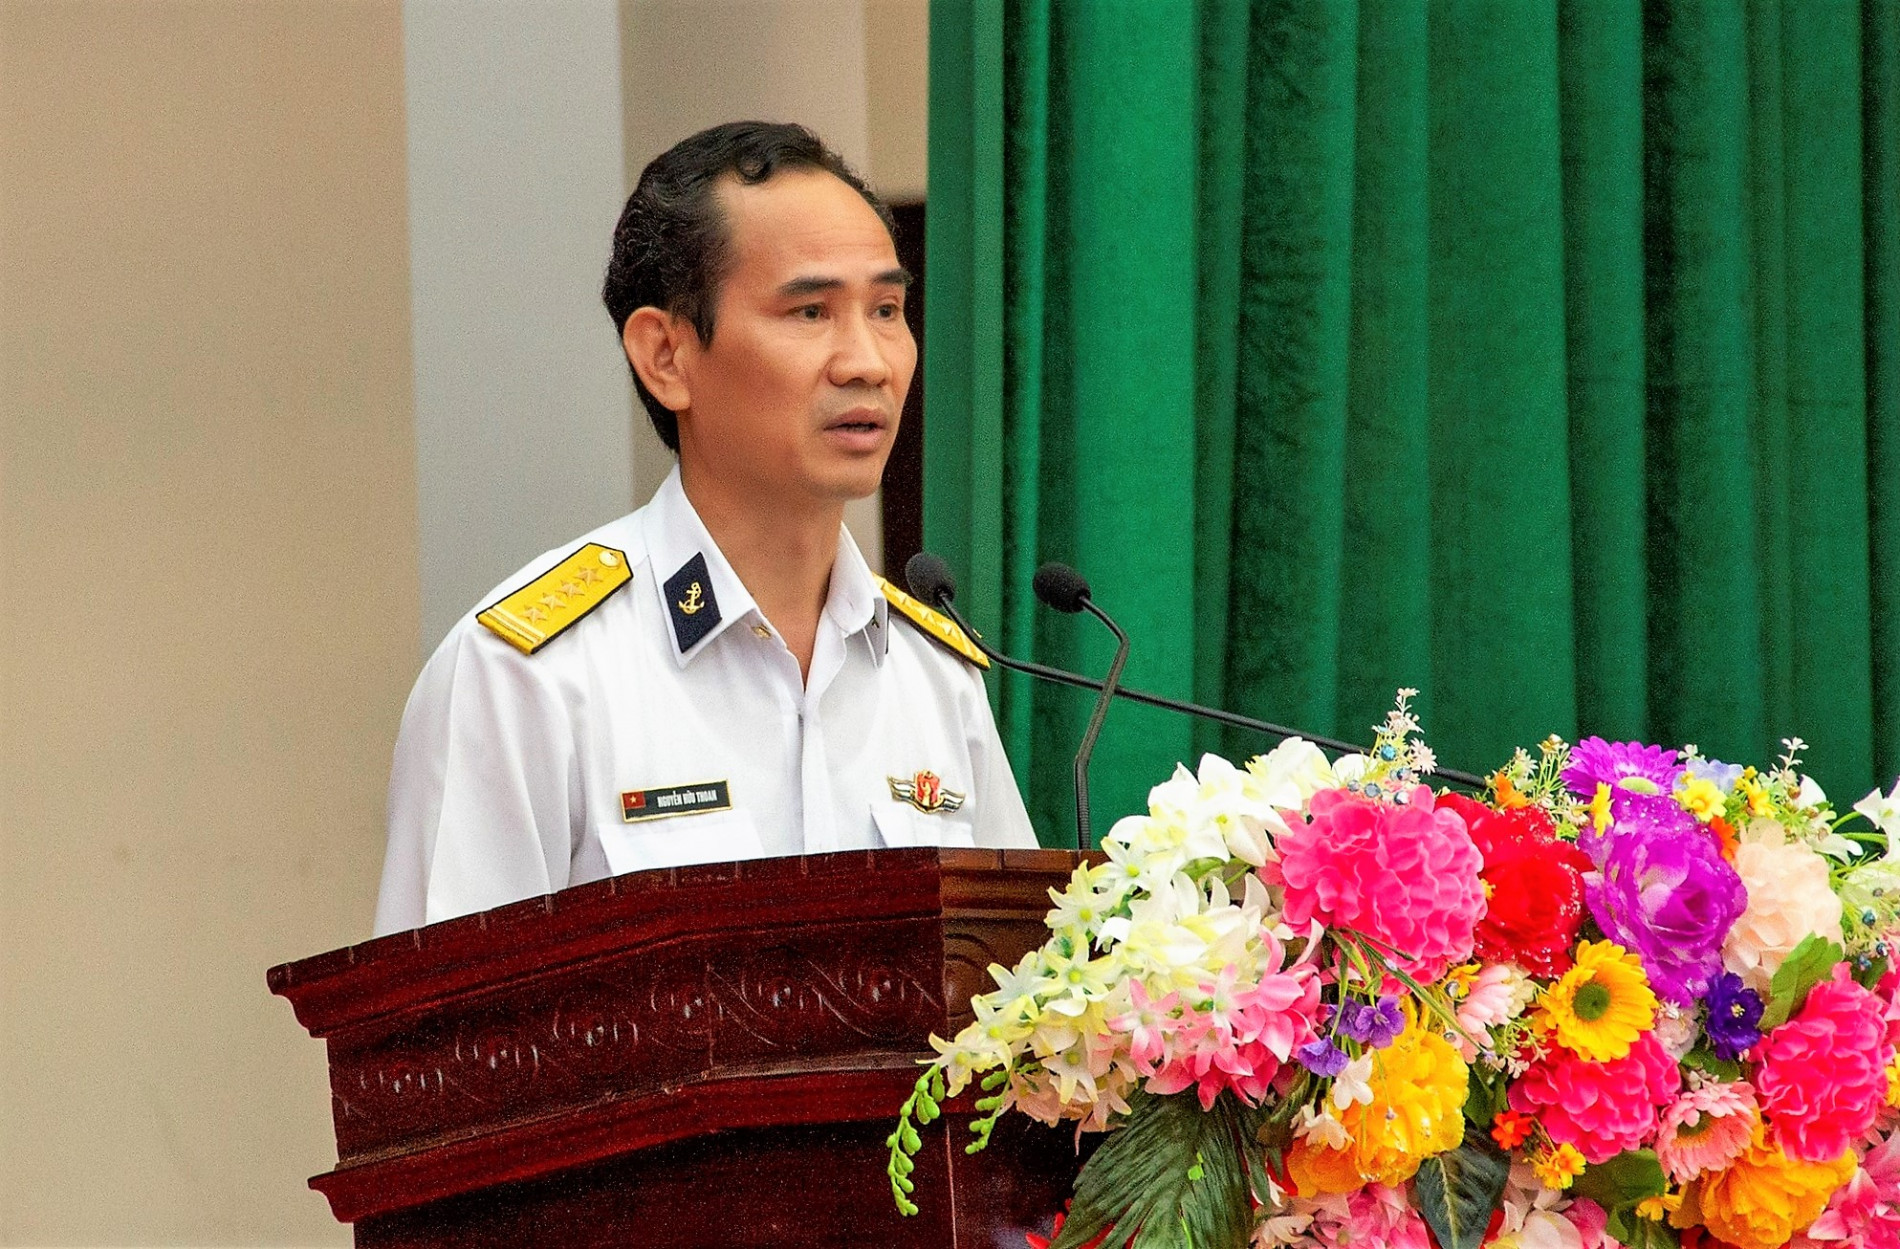 Tạp chí Biển Việt Nam mang Tết sớm đến với cán bộ, chiến sĩ Hải quân và Nhân dân ở Tây Nam